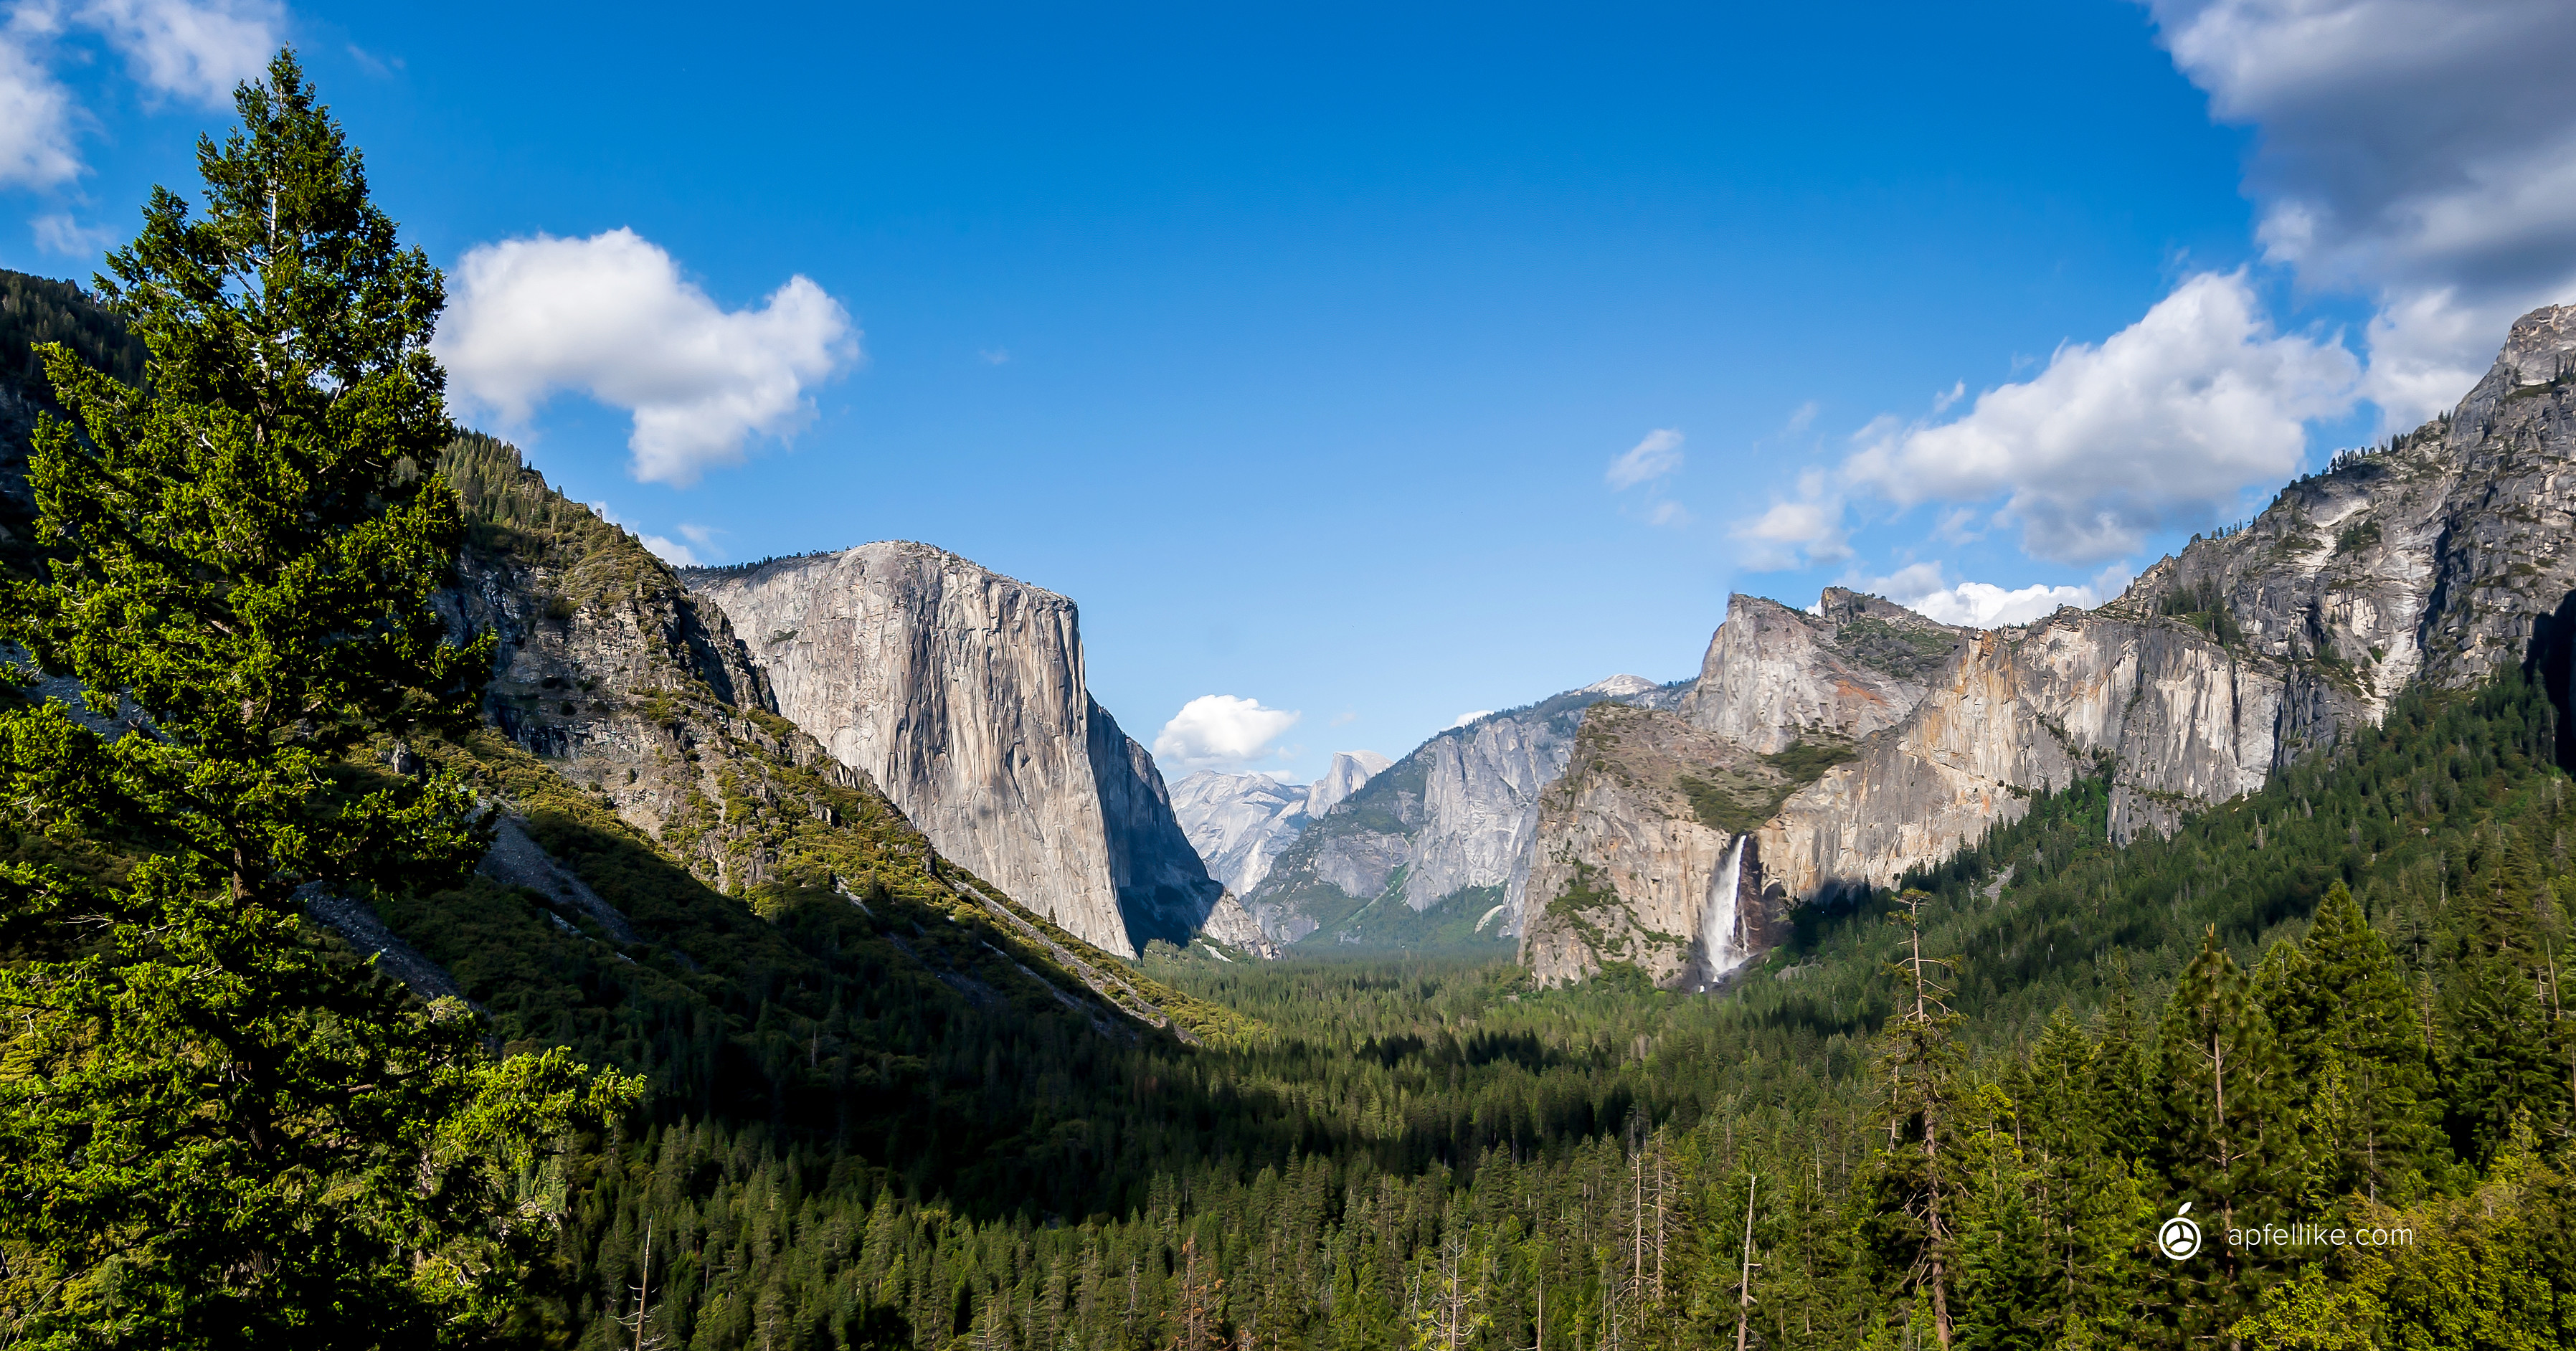 3592x1884 Apfellike: Mac OS X Yosemite Wallpaper & Schreibtisch-Hintergrundbilder